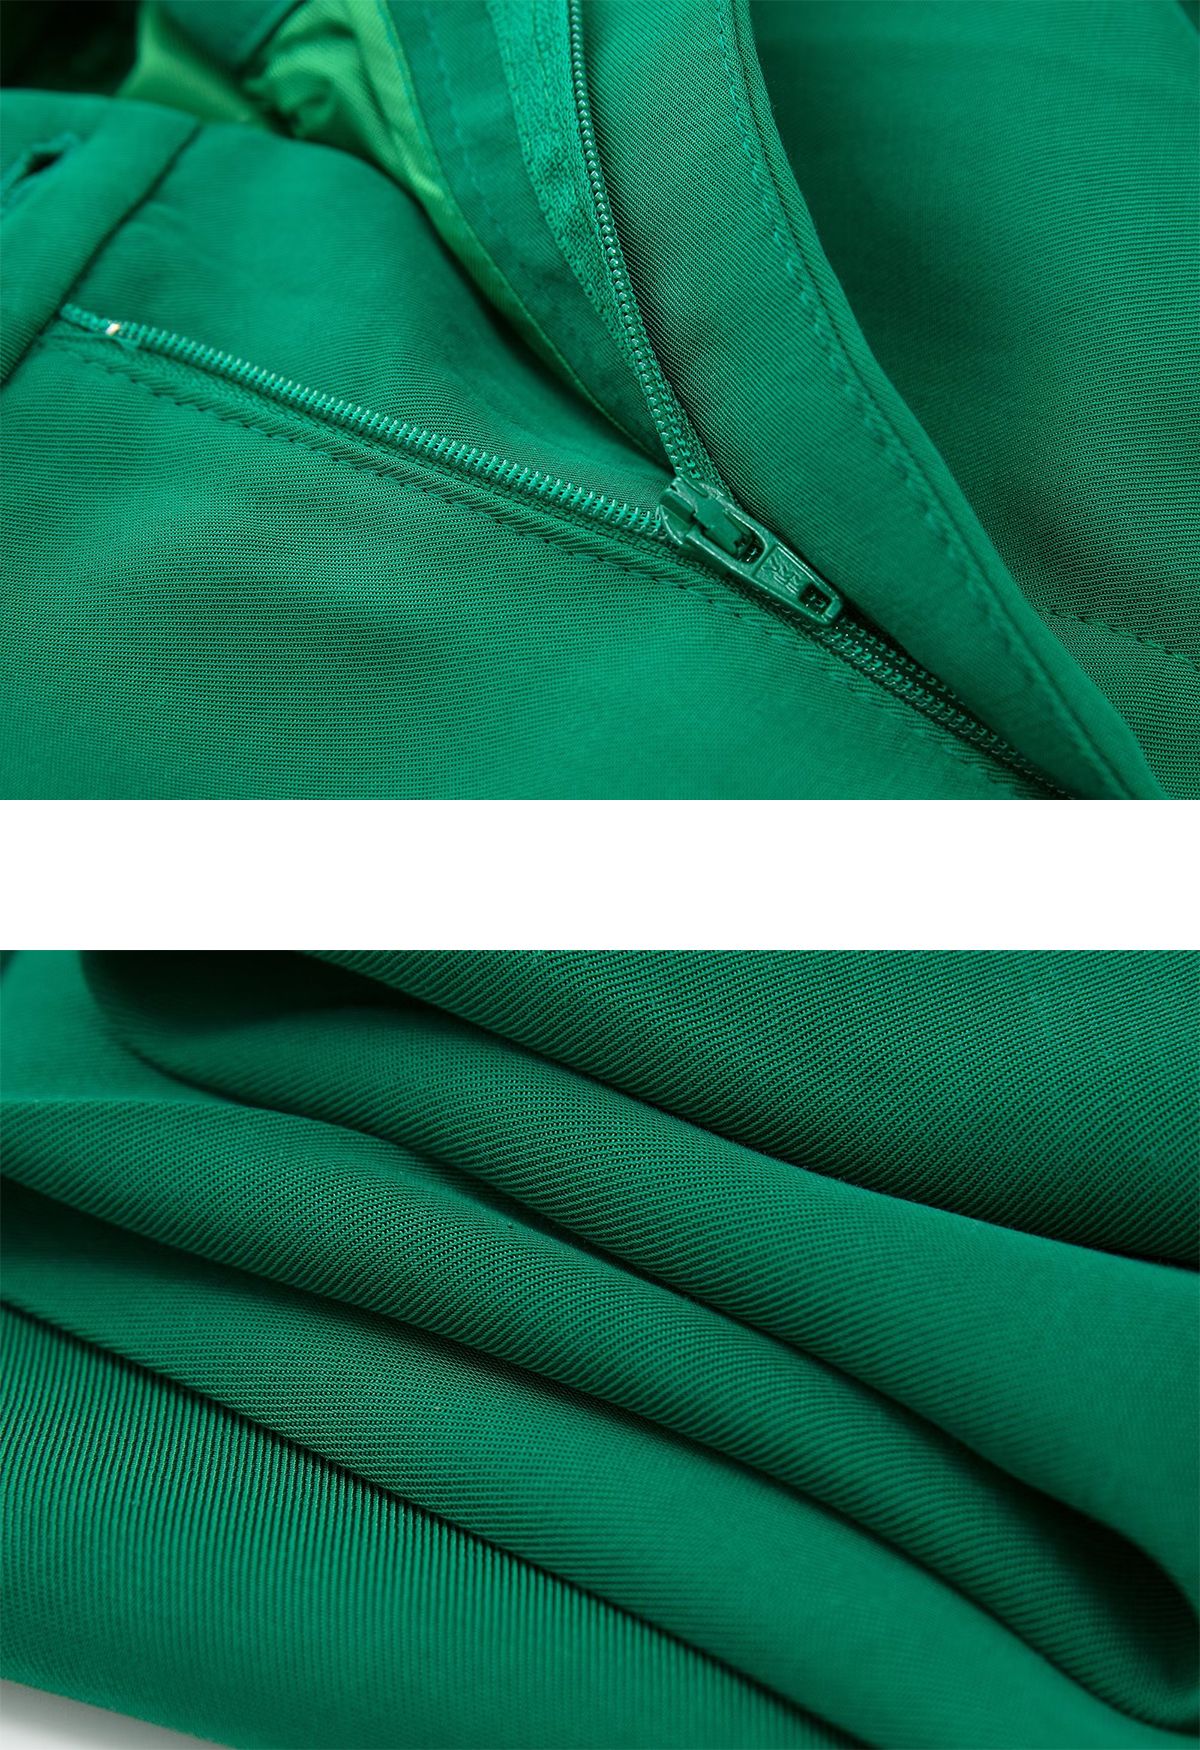 Pantalones de pierna recta con drapeado verde sólido Simplicity